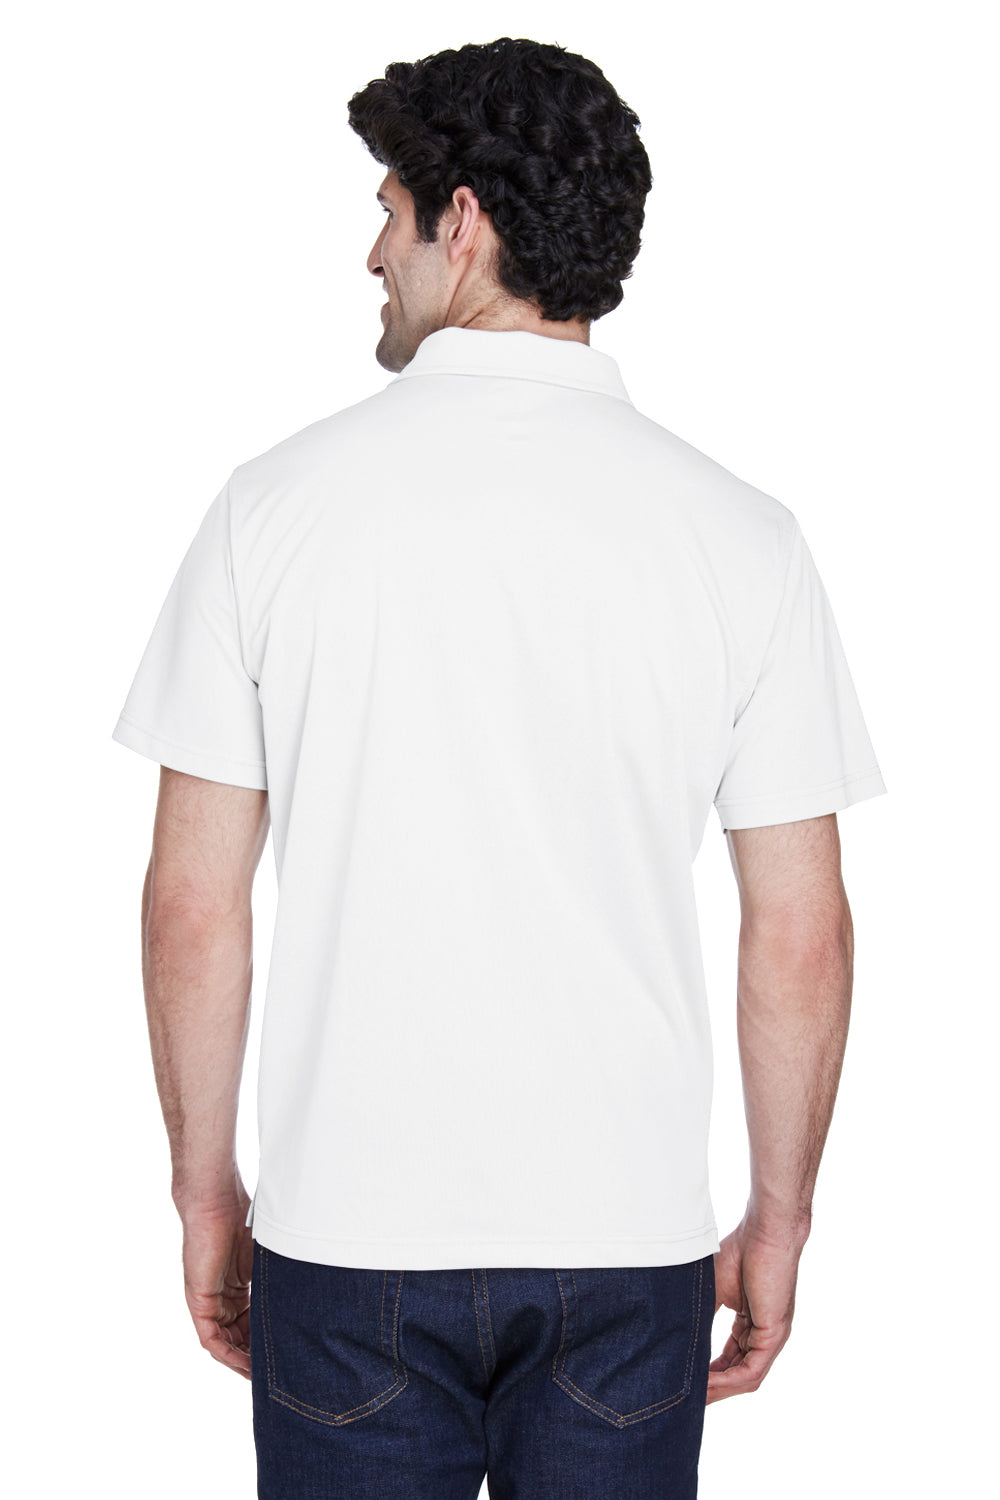 Team 365 TT21 Mens Command Performance Moisture Wicking Short Sleeve Polo Shirt White Back